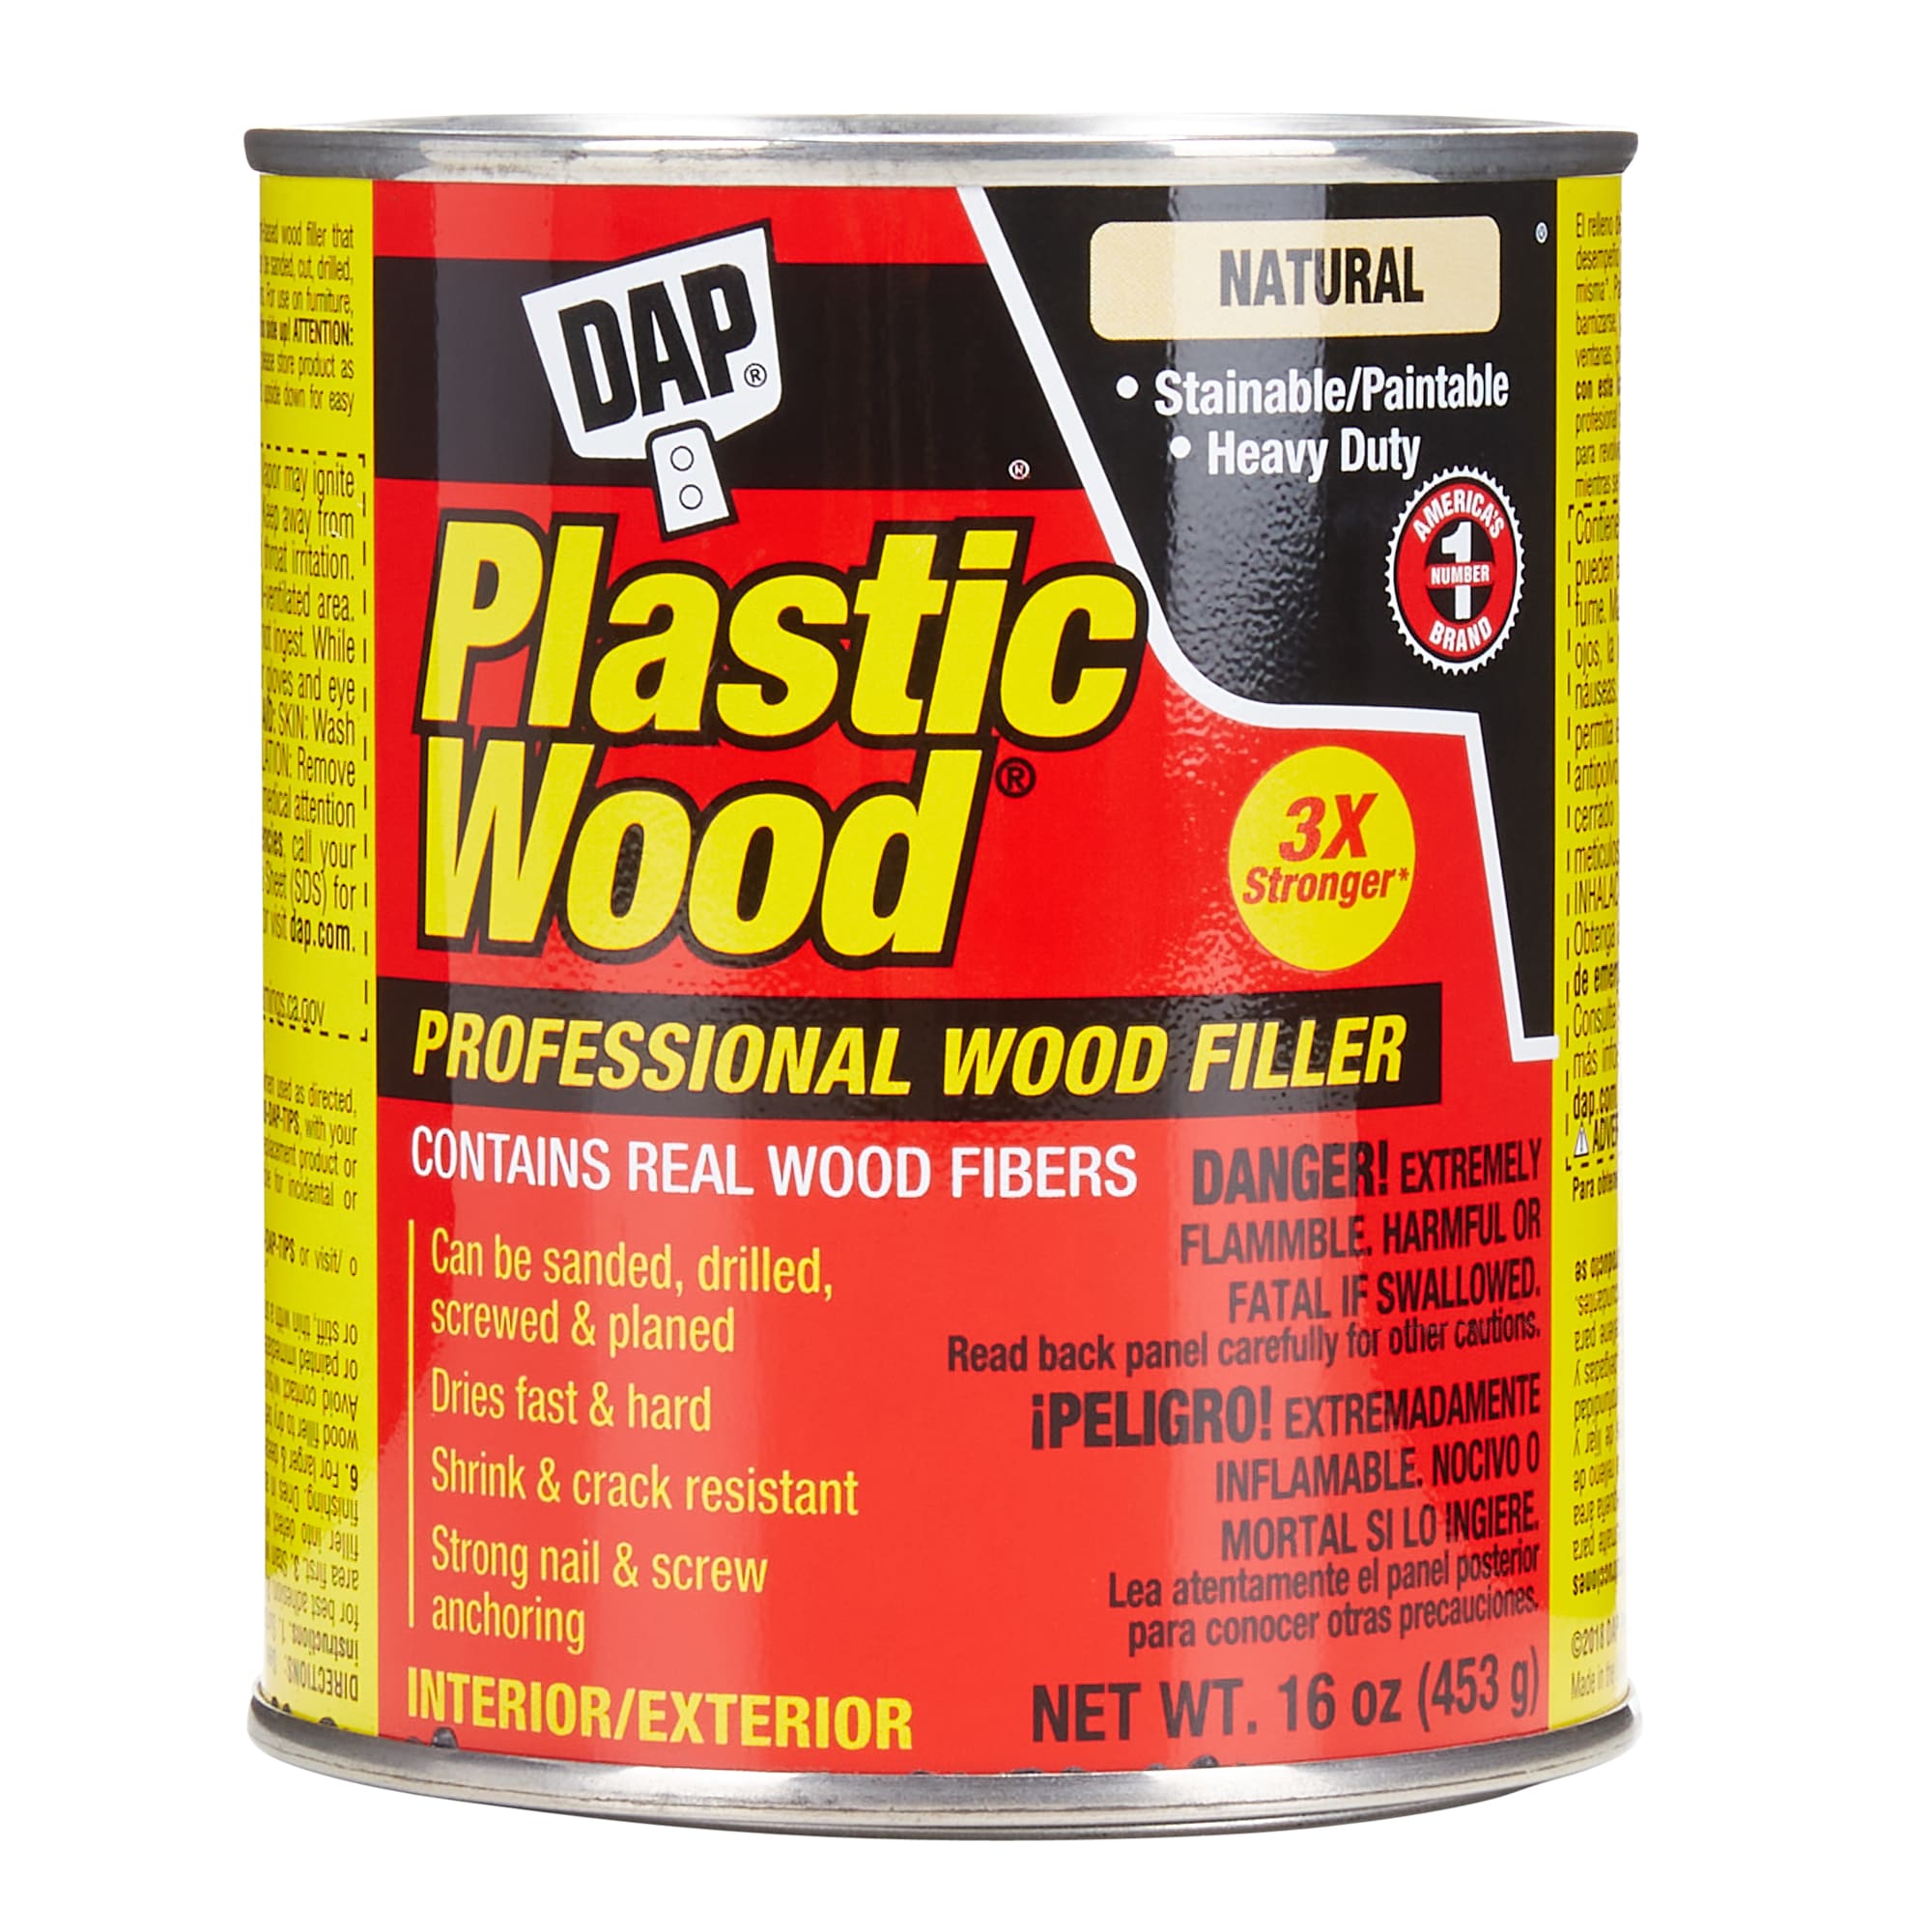 DAP Plastic Wood 16-oz Natural Wood Filler in the Wood Filler